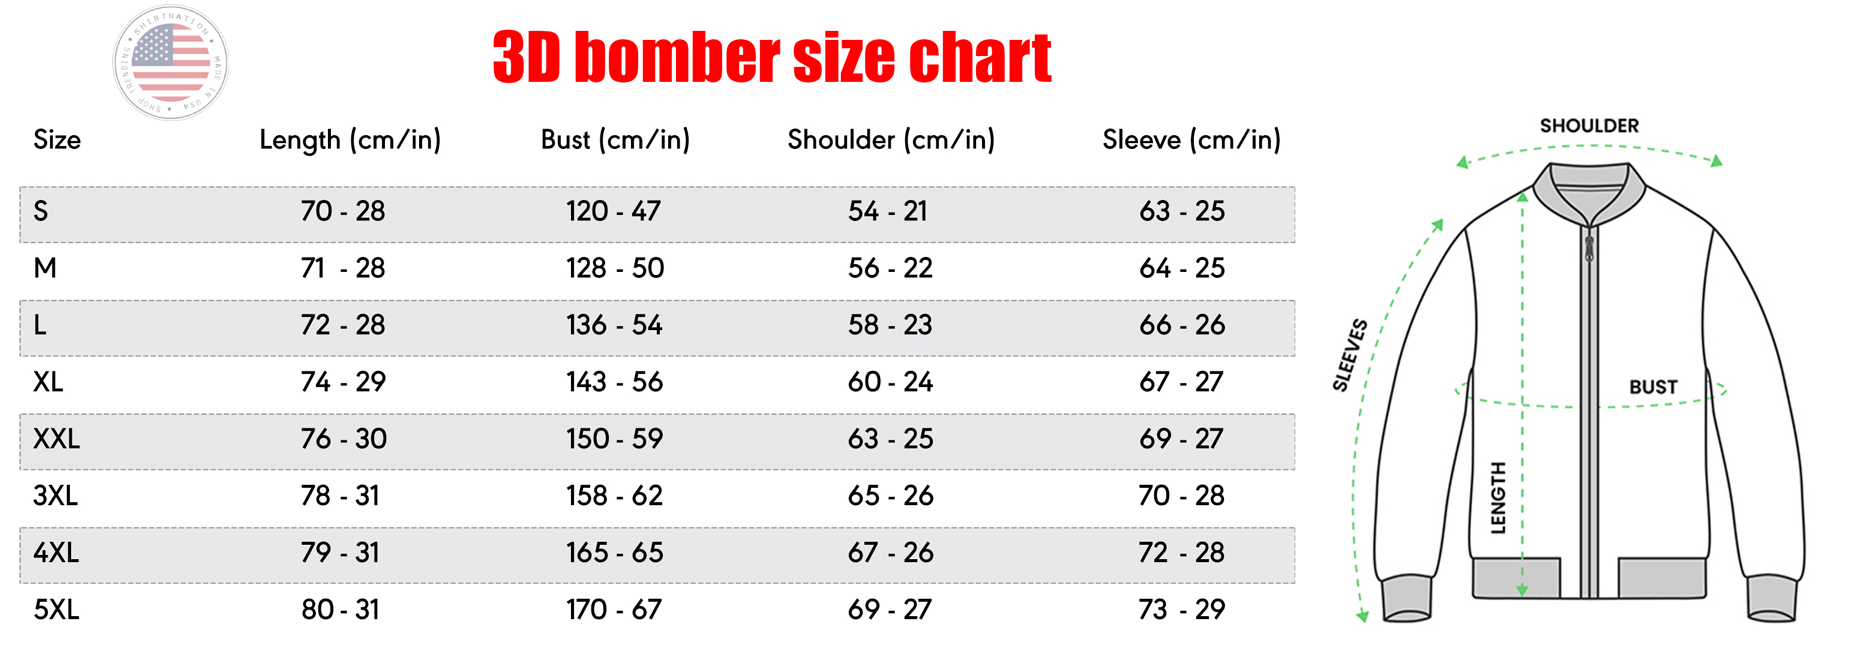 Bomber Jacket Size Chart Shirtnation